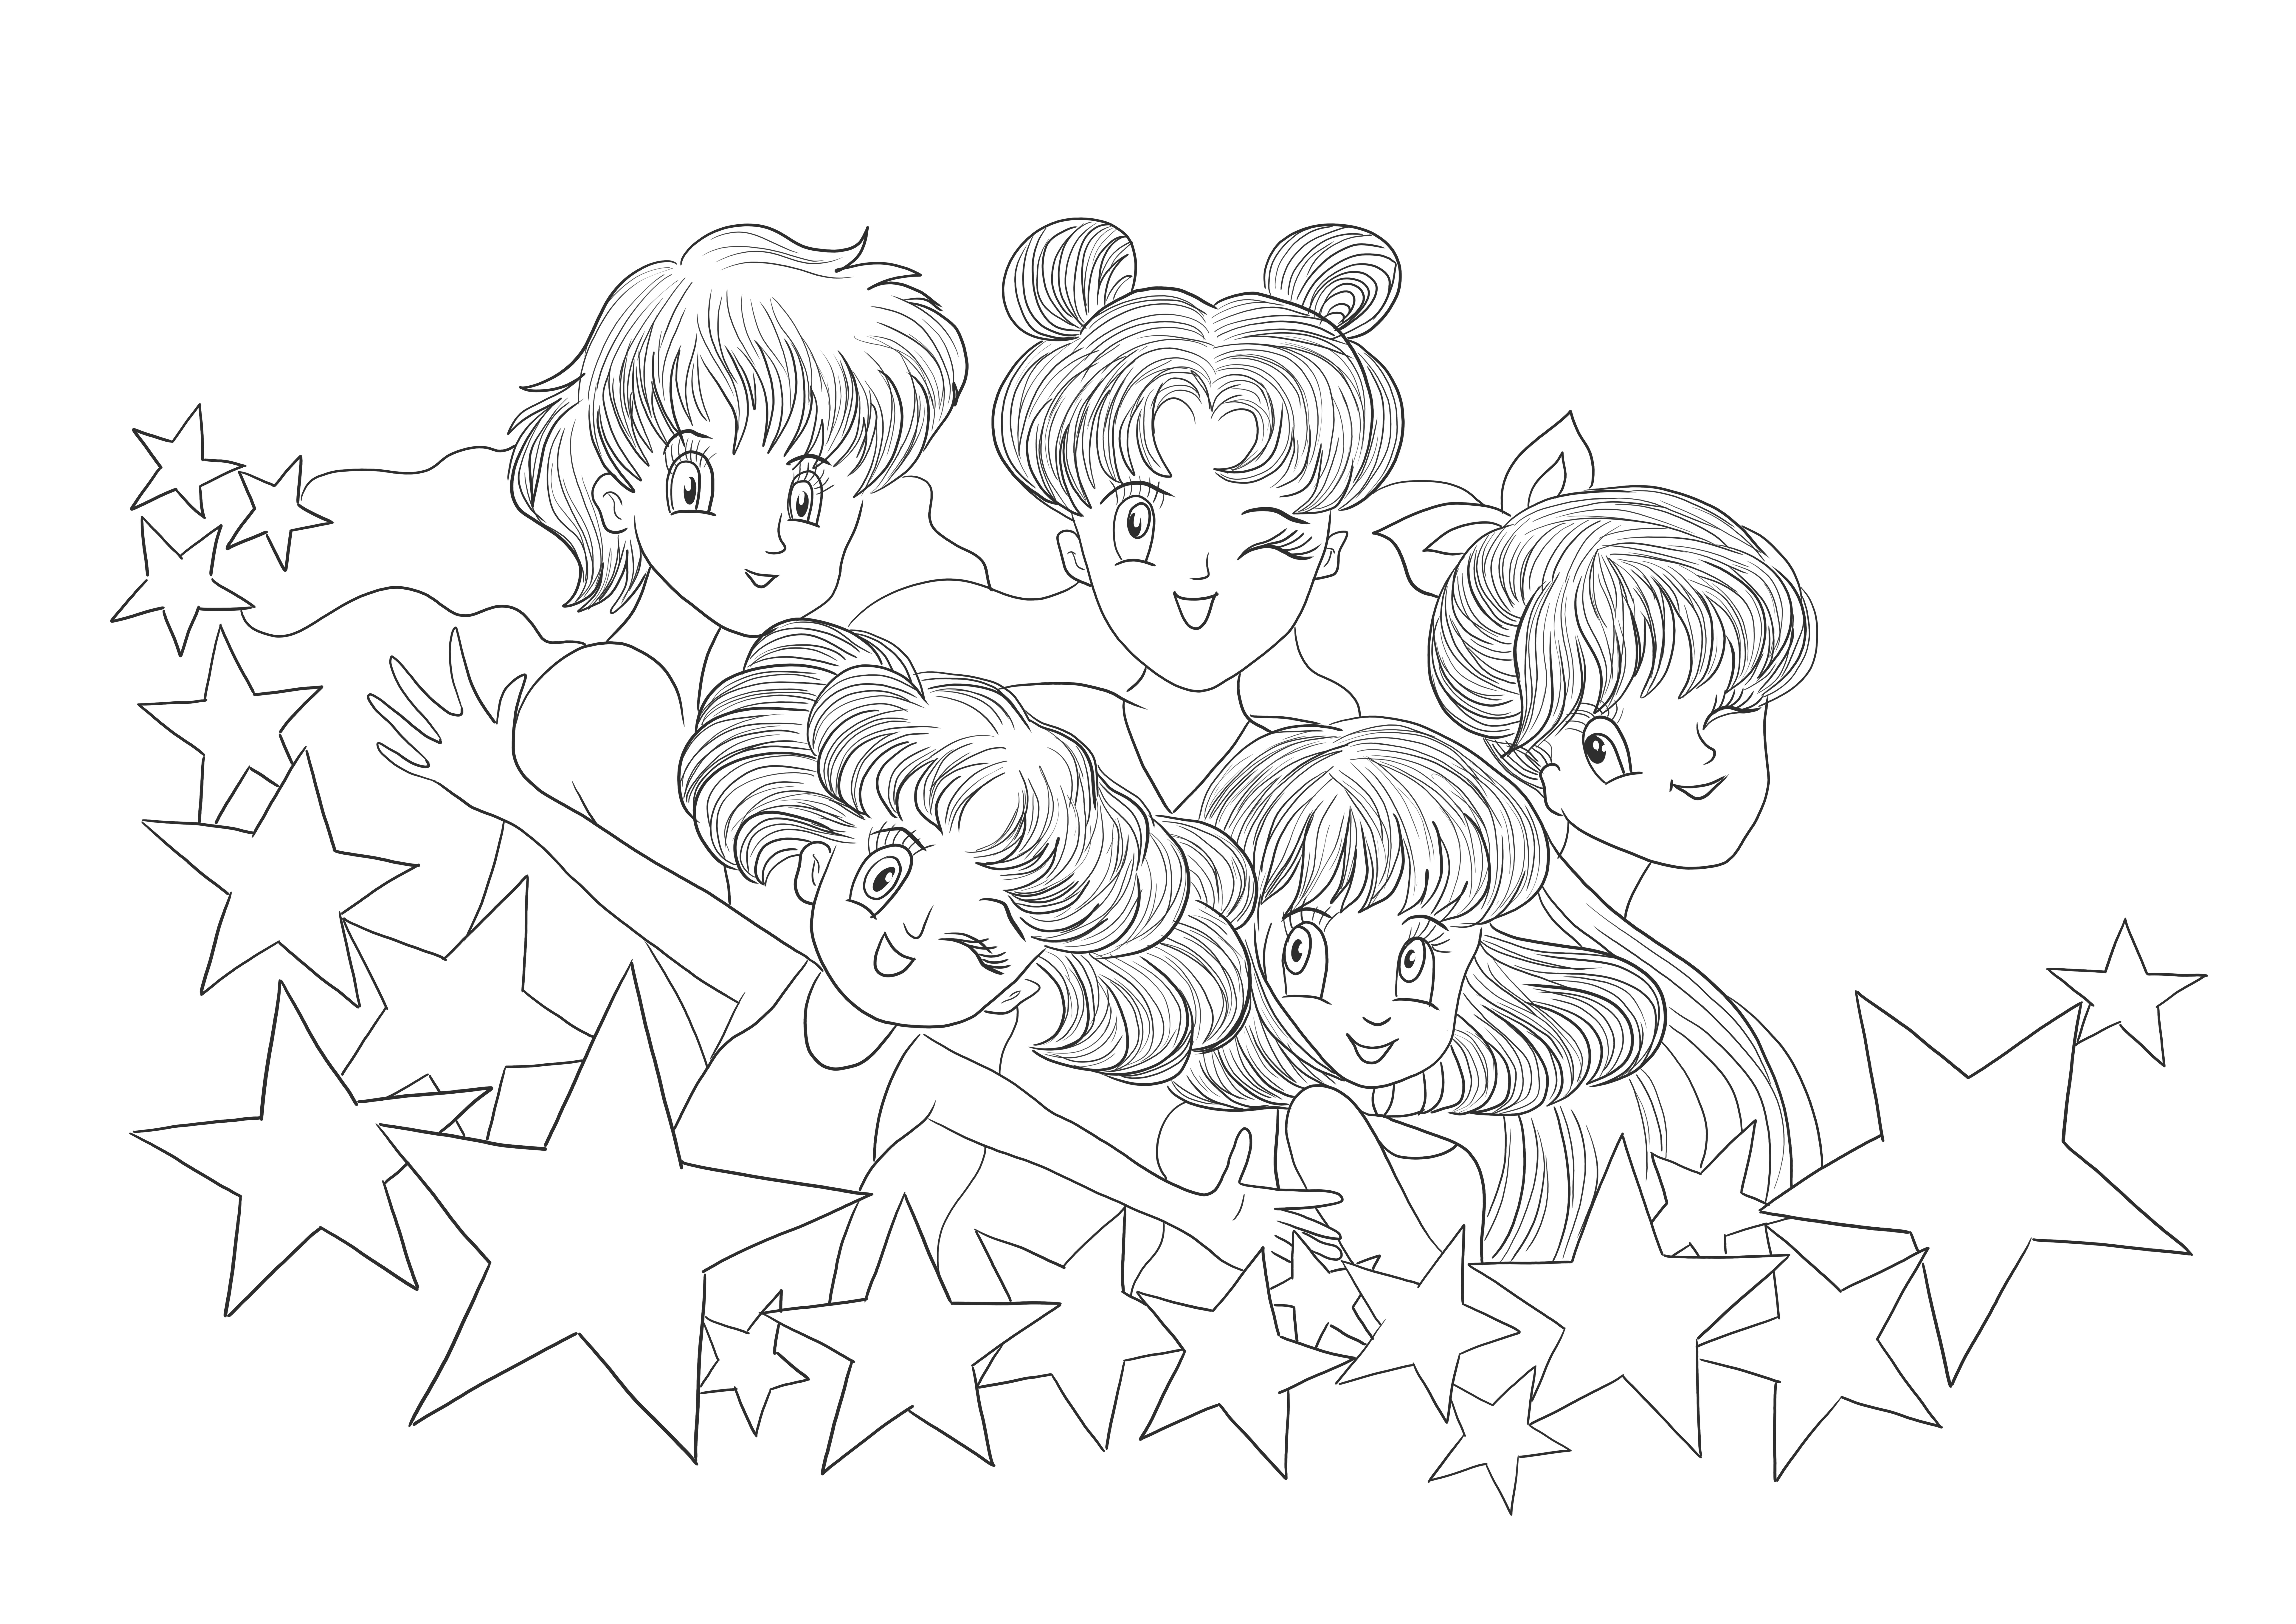 Gratis afdrukbare Sailor Moon-afbeeldingen om te downloaden en af te drukken voor kinderen om in te kleuren. kleurplaat